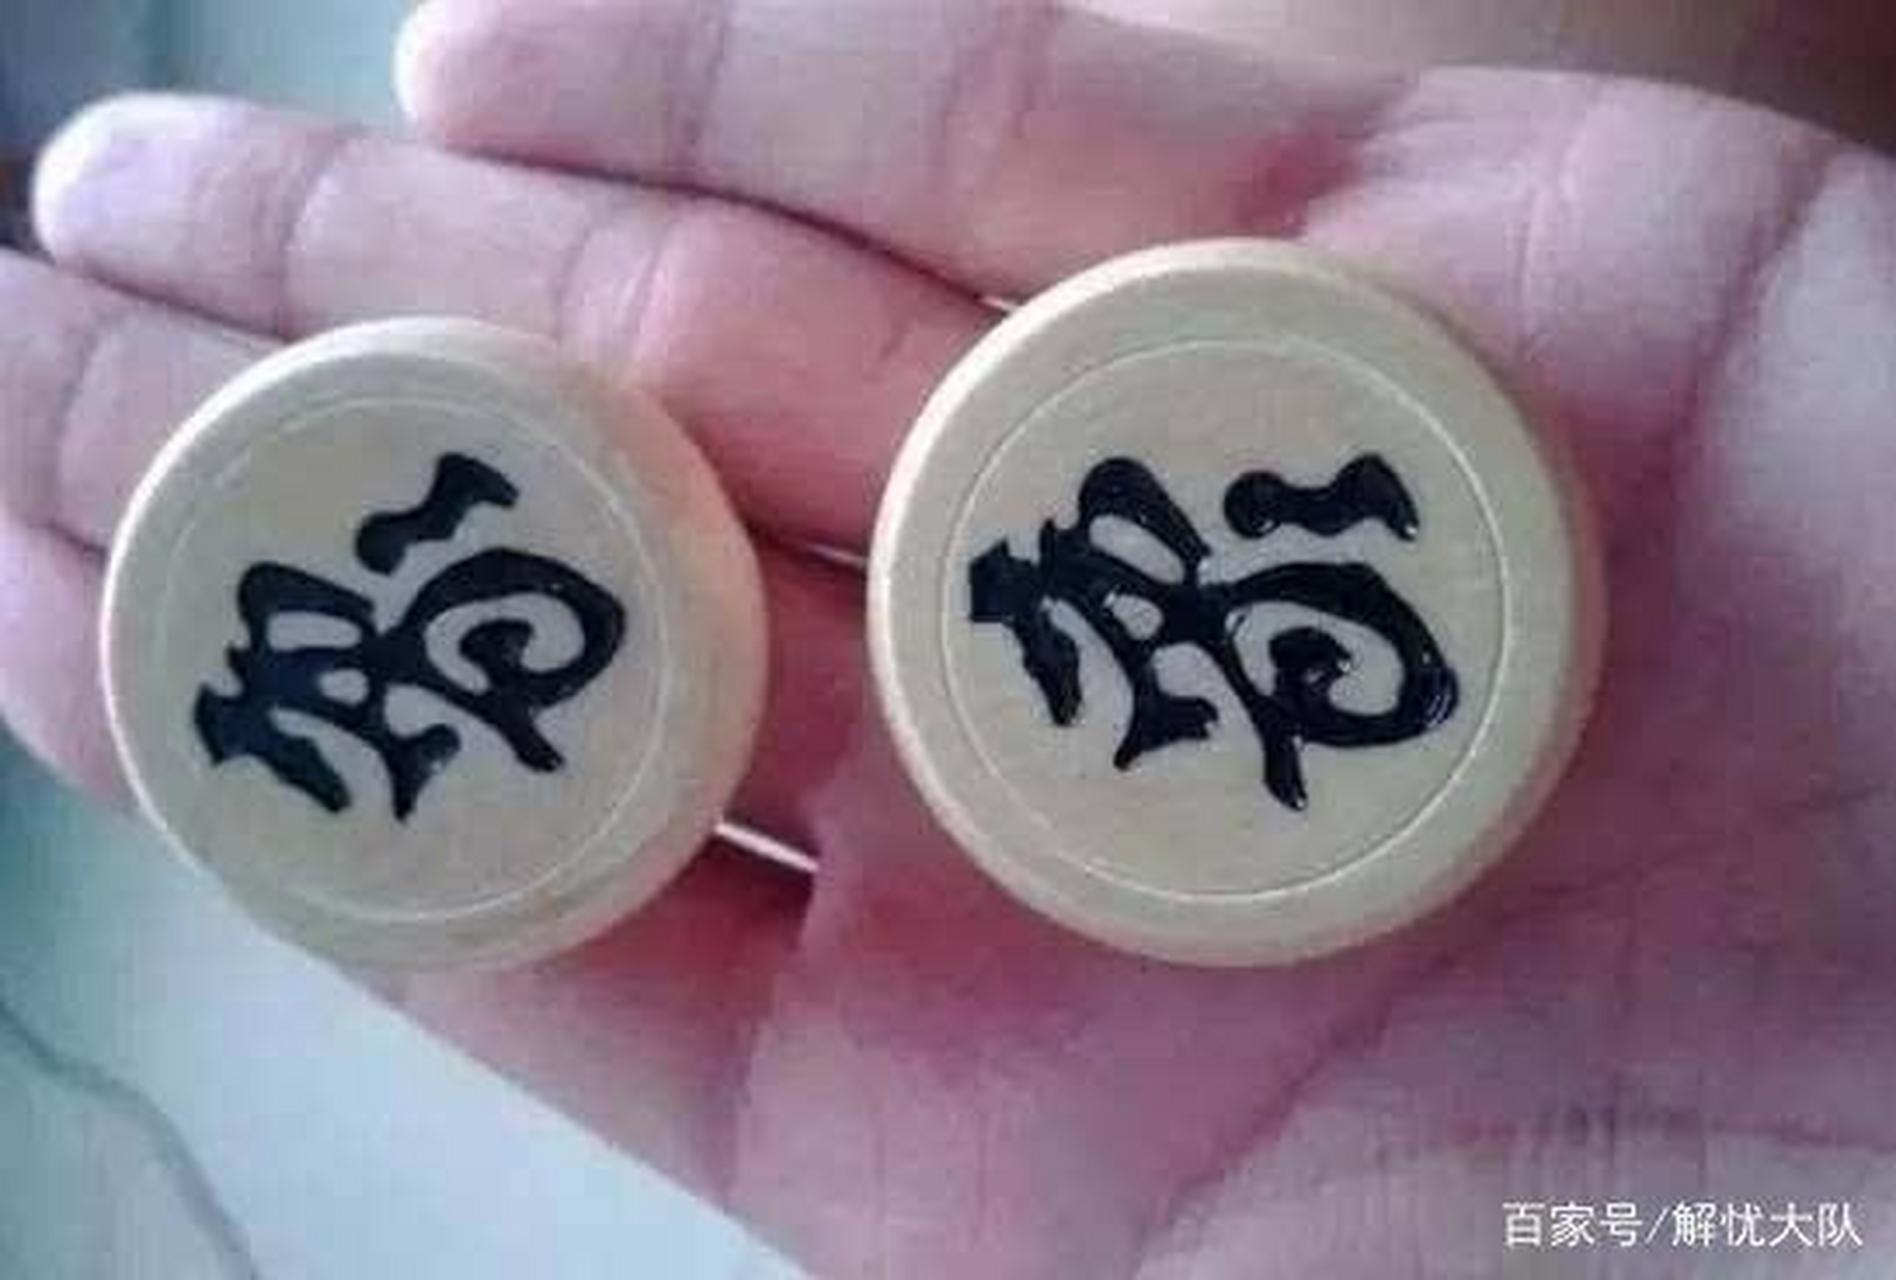 有人知道中国象棋里面两个象放在一起代表什么吗?请留言给我评论哦!